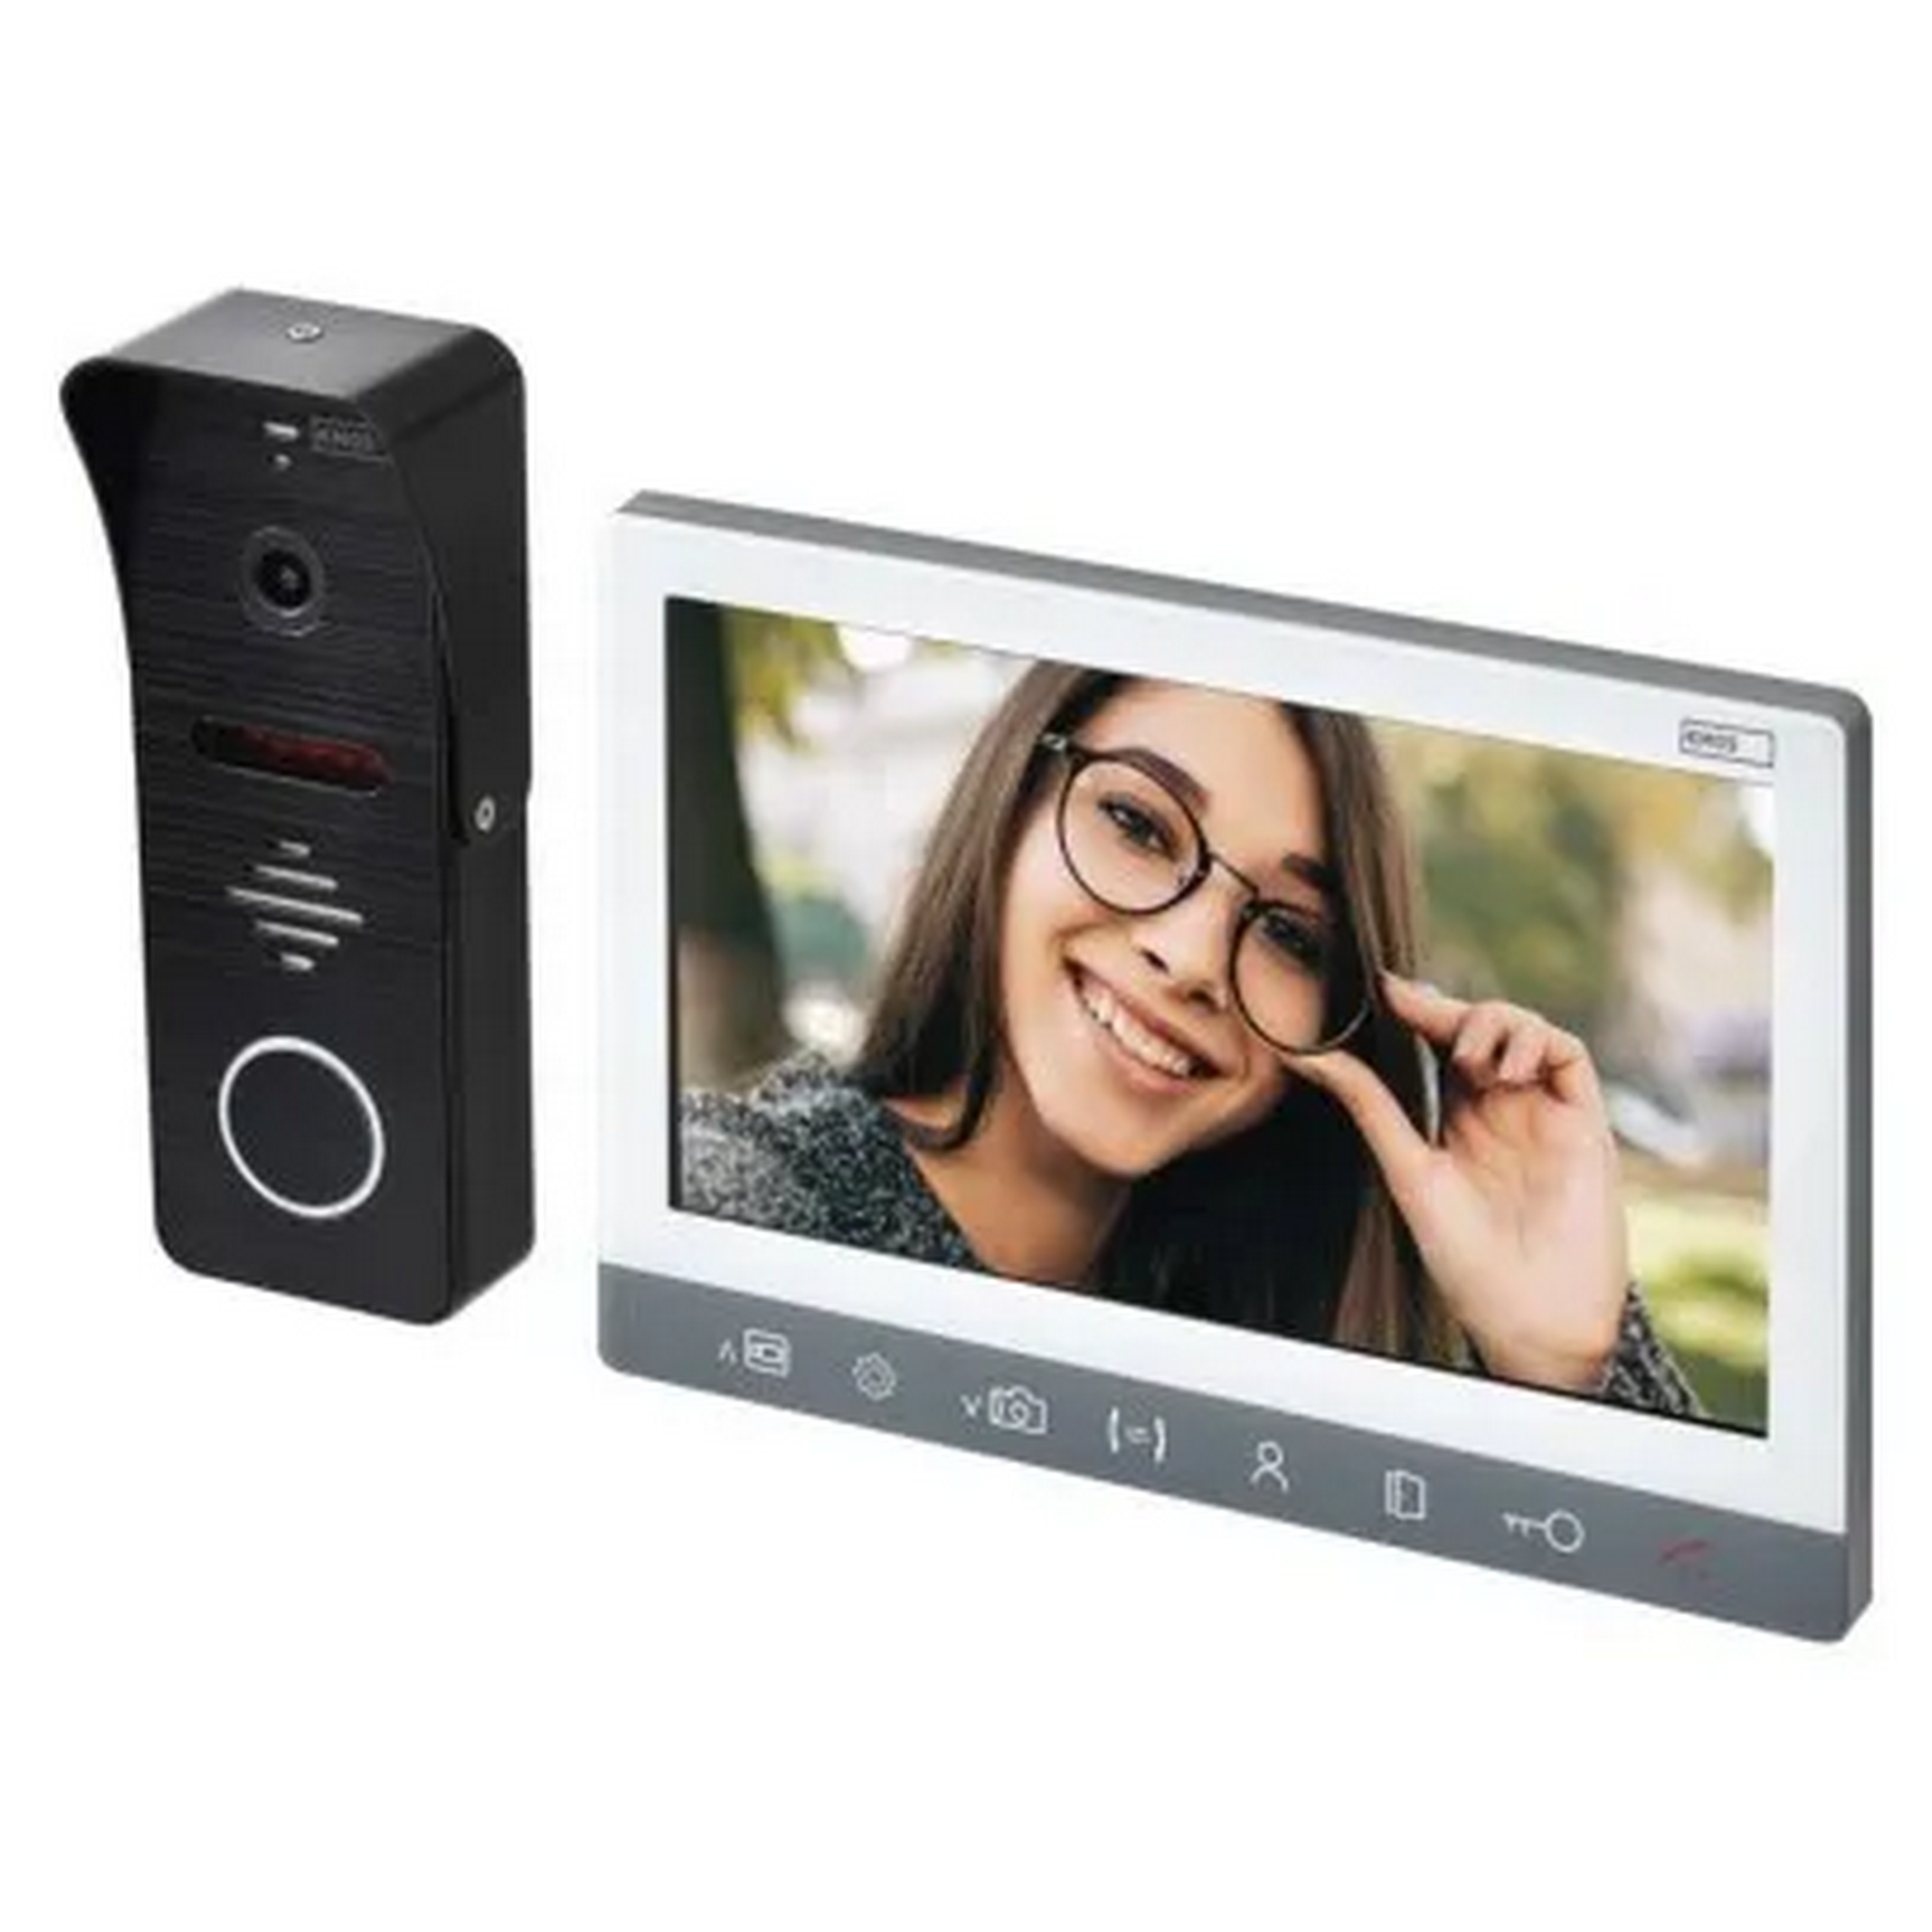 Video-Türsprechanlage 'H3010' inklusive Kameraeinheit EM-10AHD + product picture